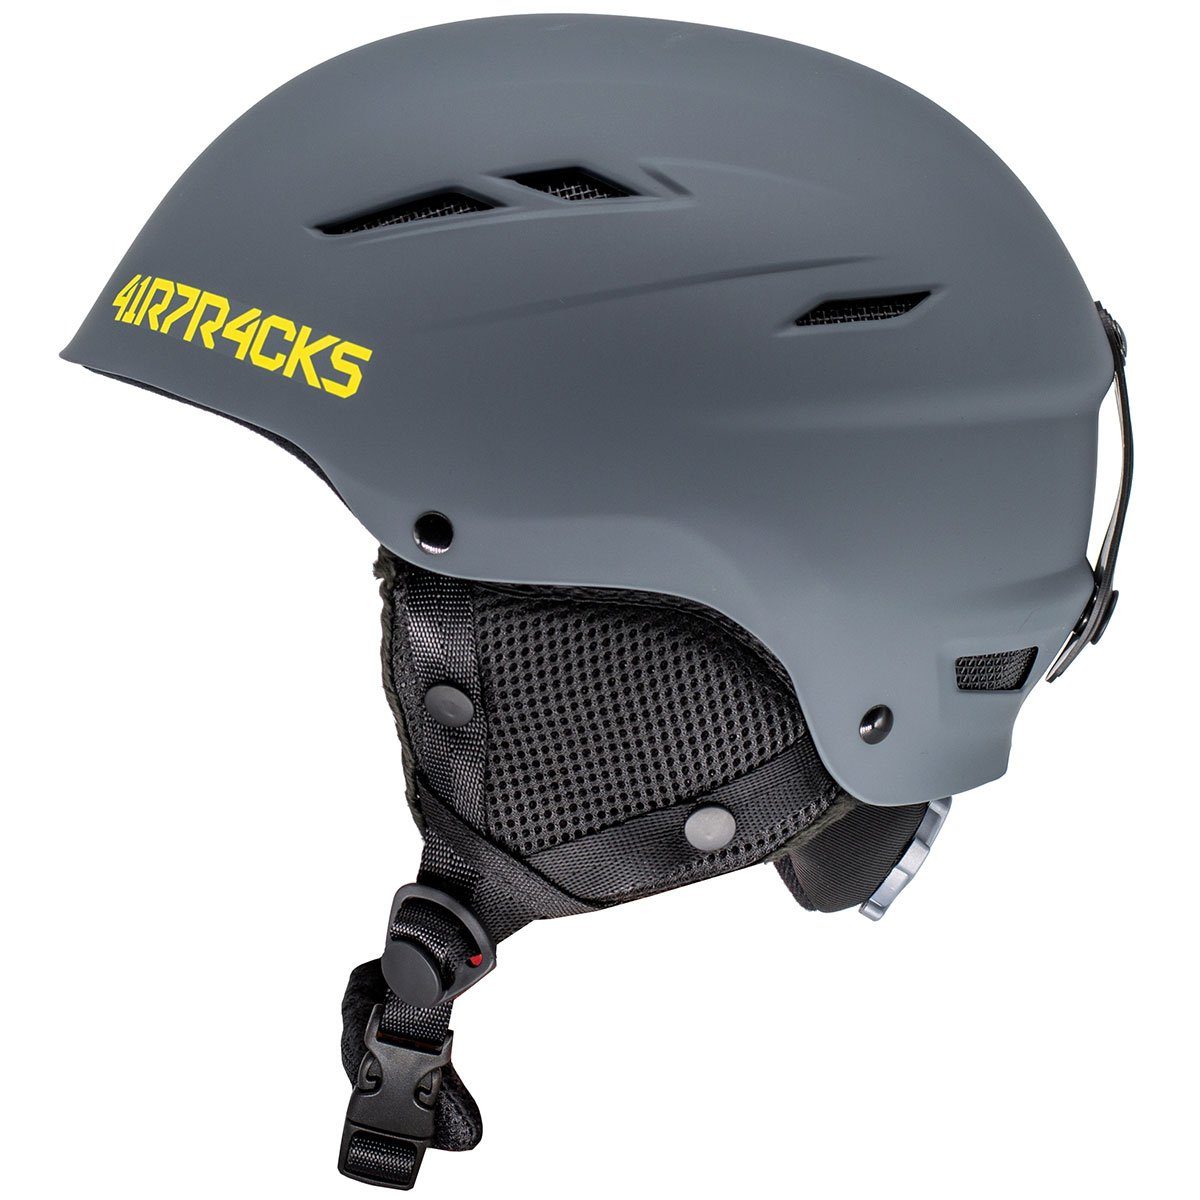 Airtracks Snowboardhelm Ski - Snowboard Helm STAR T-200 (für Herren und Damen mit Ventilationssystem & stufenloser Anpassung), - Farbe Matt » S- 48-51cm. M - 52-55cm, L- 56-60cm « grau